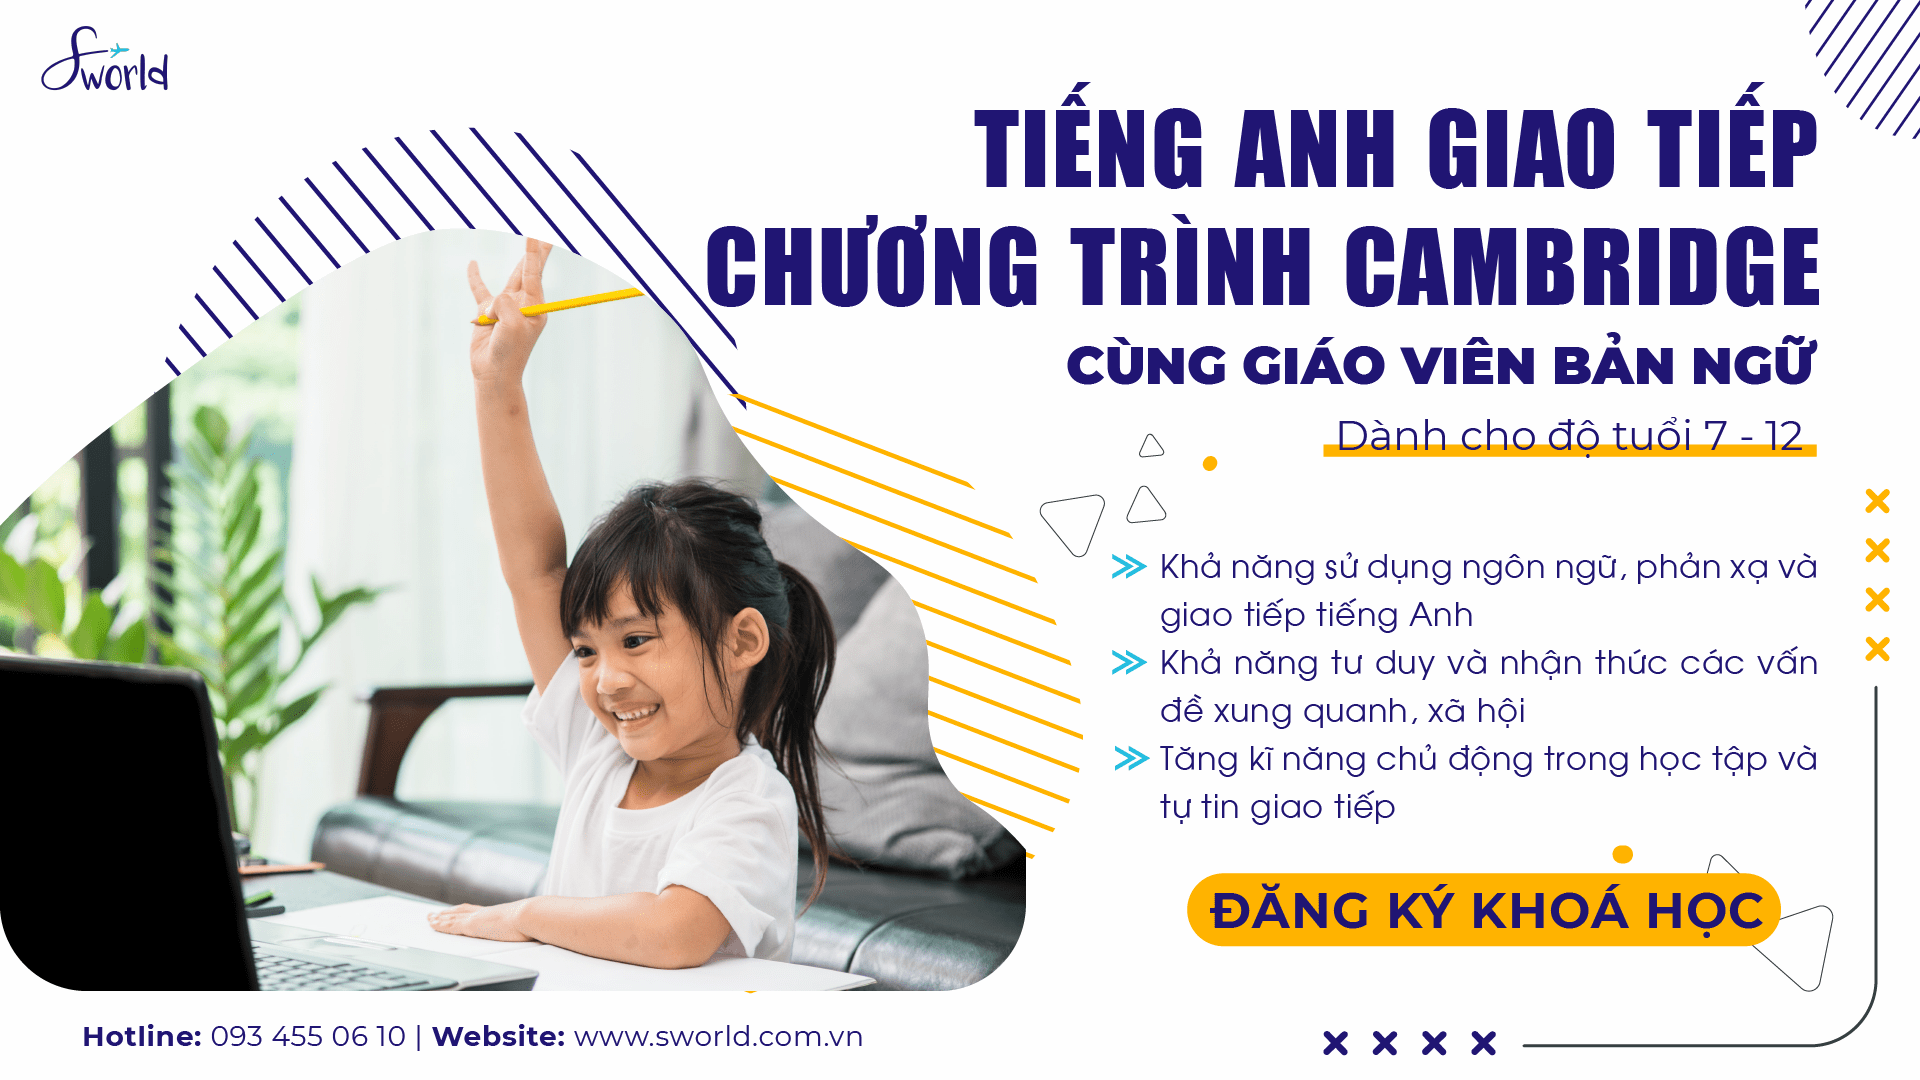 Khoá học tiếng Anh giao tiếp cho trẻ - Sworld Việt Nam